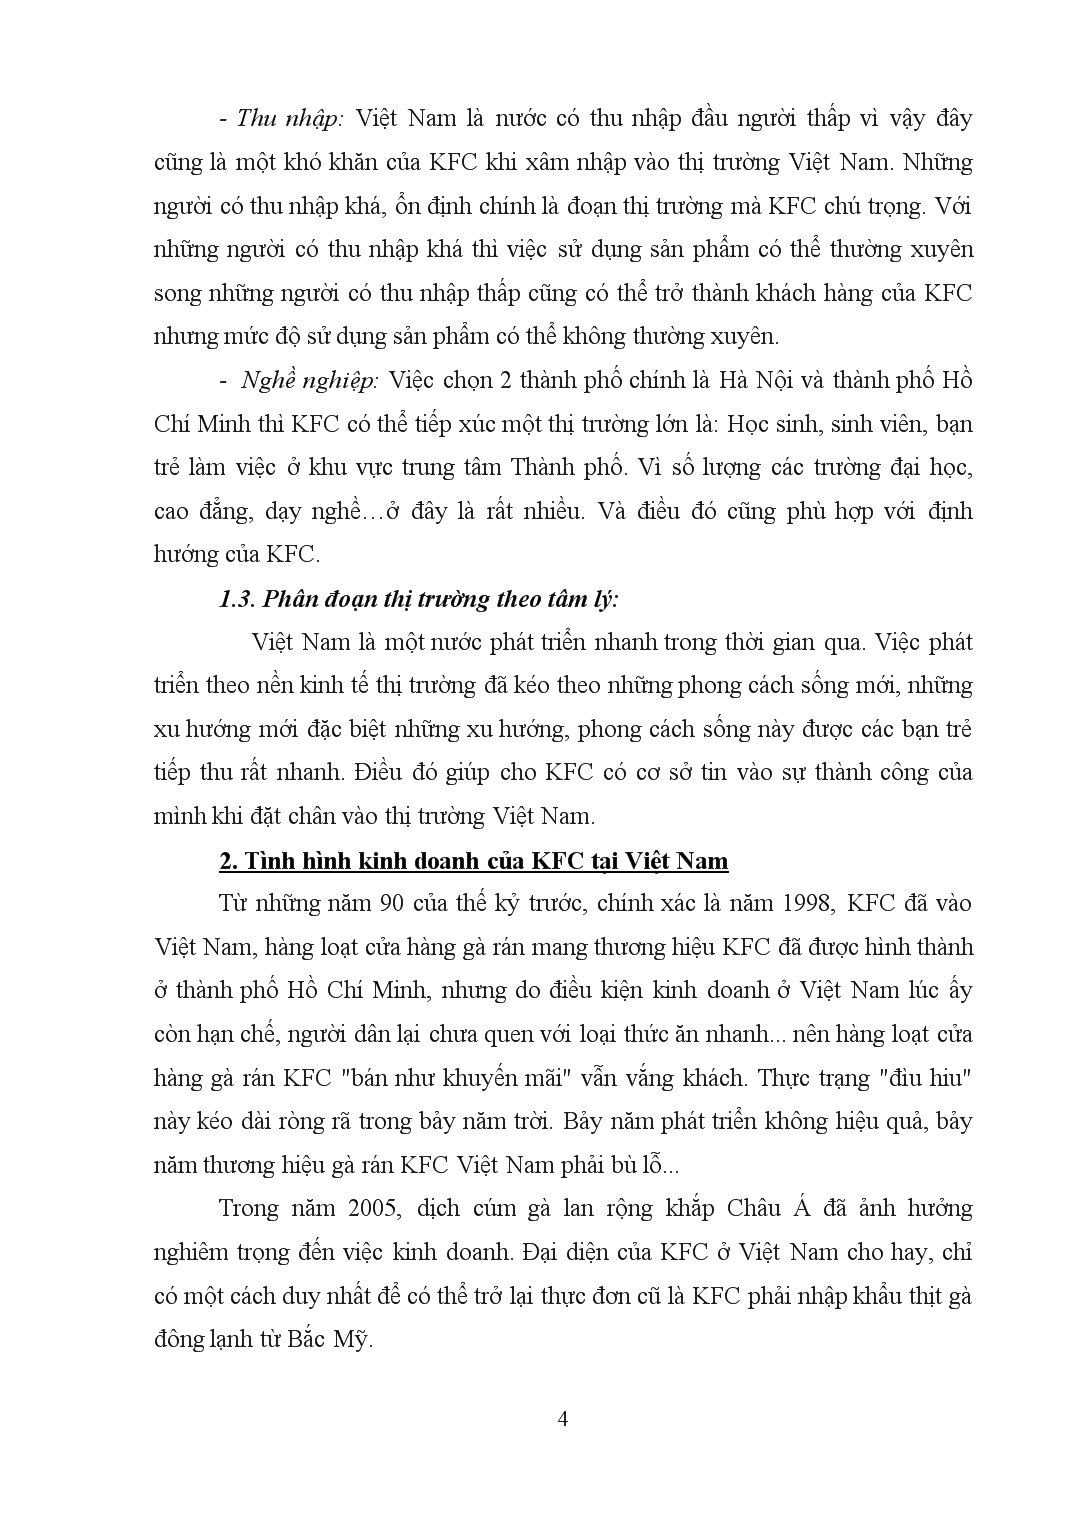 Đề tài Chiến lược đối với sản phẩm của thương hiệu gà rán kfc tại Việt Nam trang 4